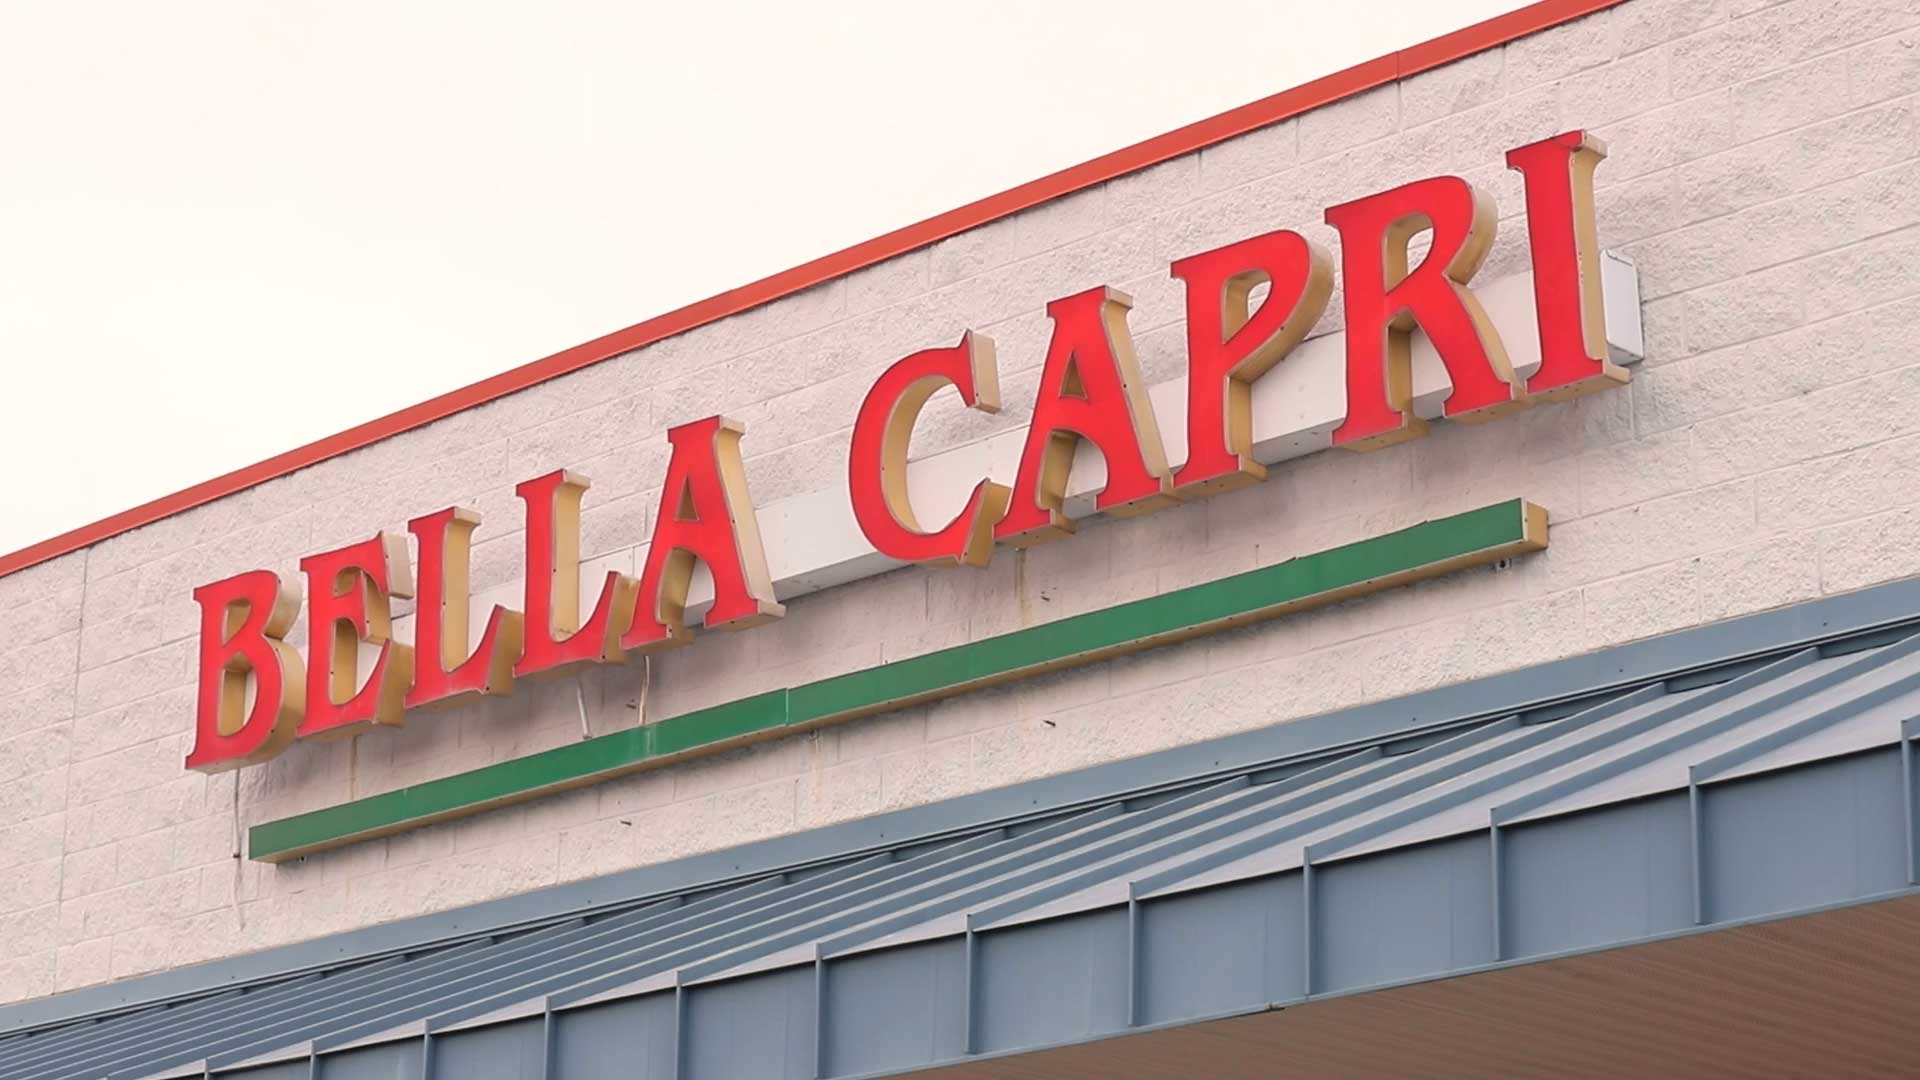 Bella Capri Restaurant & Grill Salmon Al Forno - Picture of Bella Capri  Restaurant & Grill, Georgetown - Tripadvisor